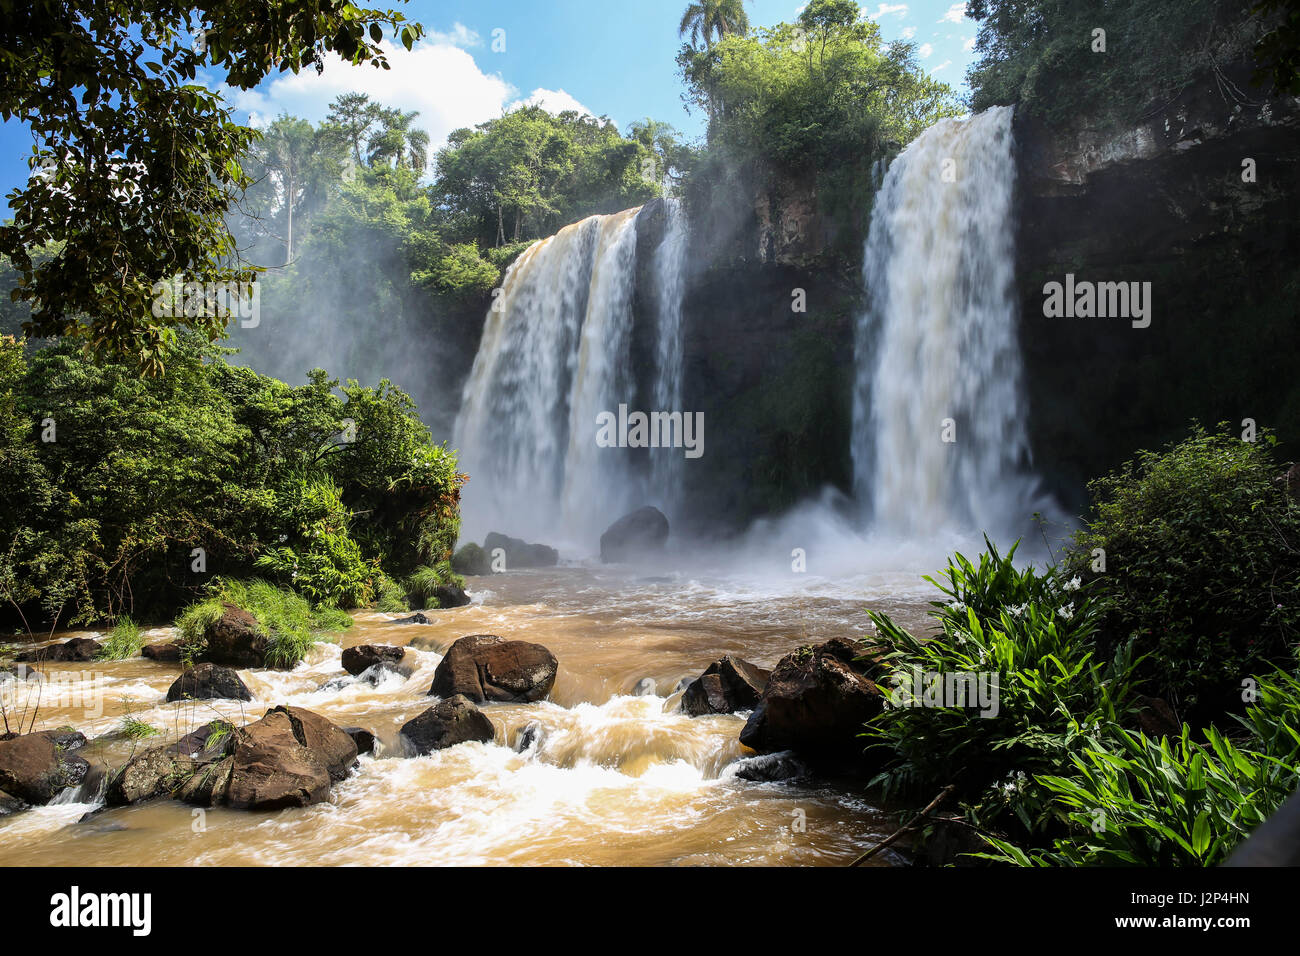 Cataratas del Iguazú, Argentina y Brasil Foto de stock